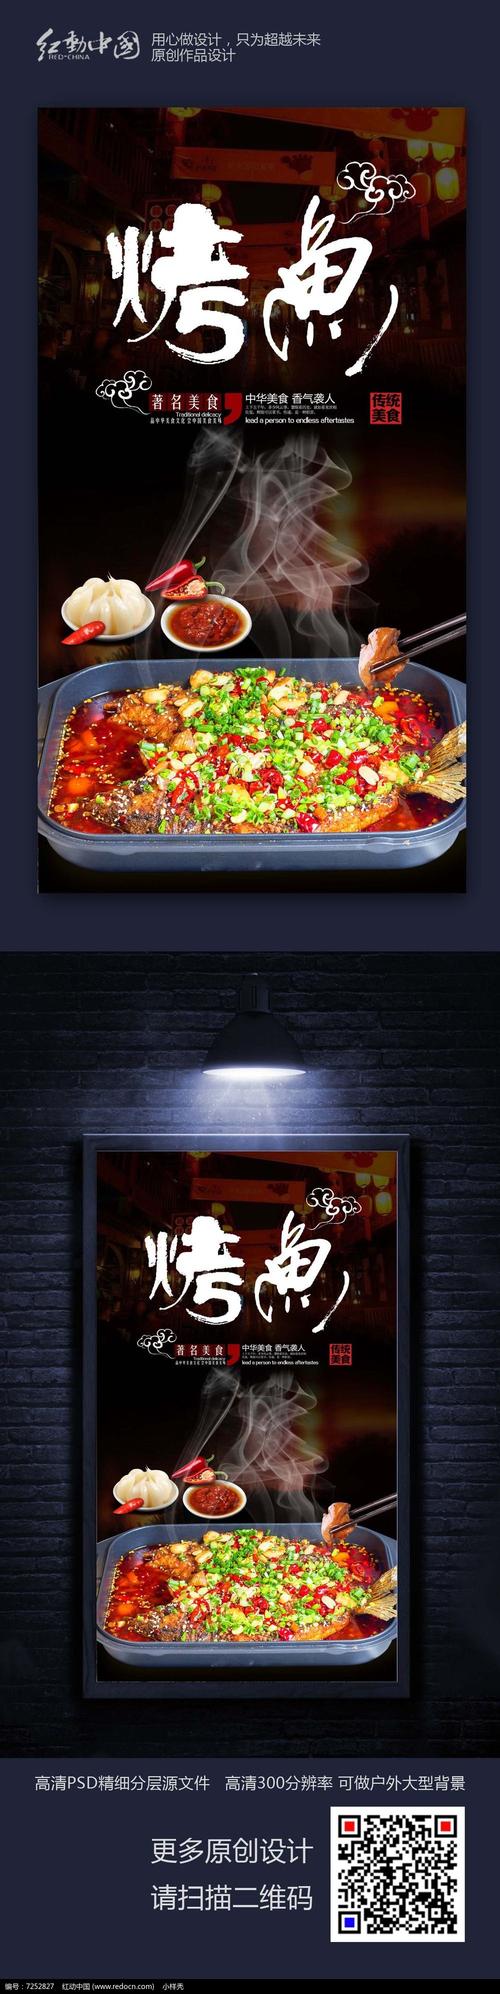 中国传统美食烤鱼美食海报设计